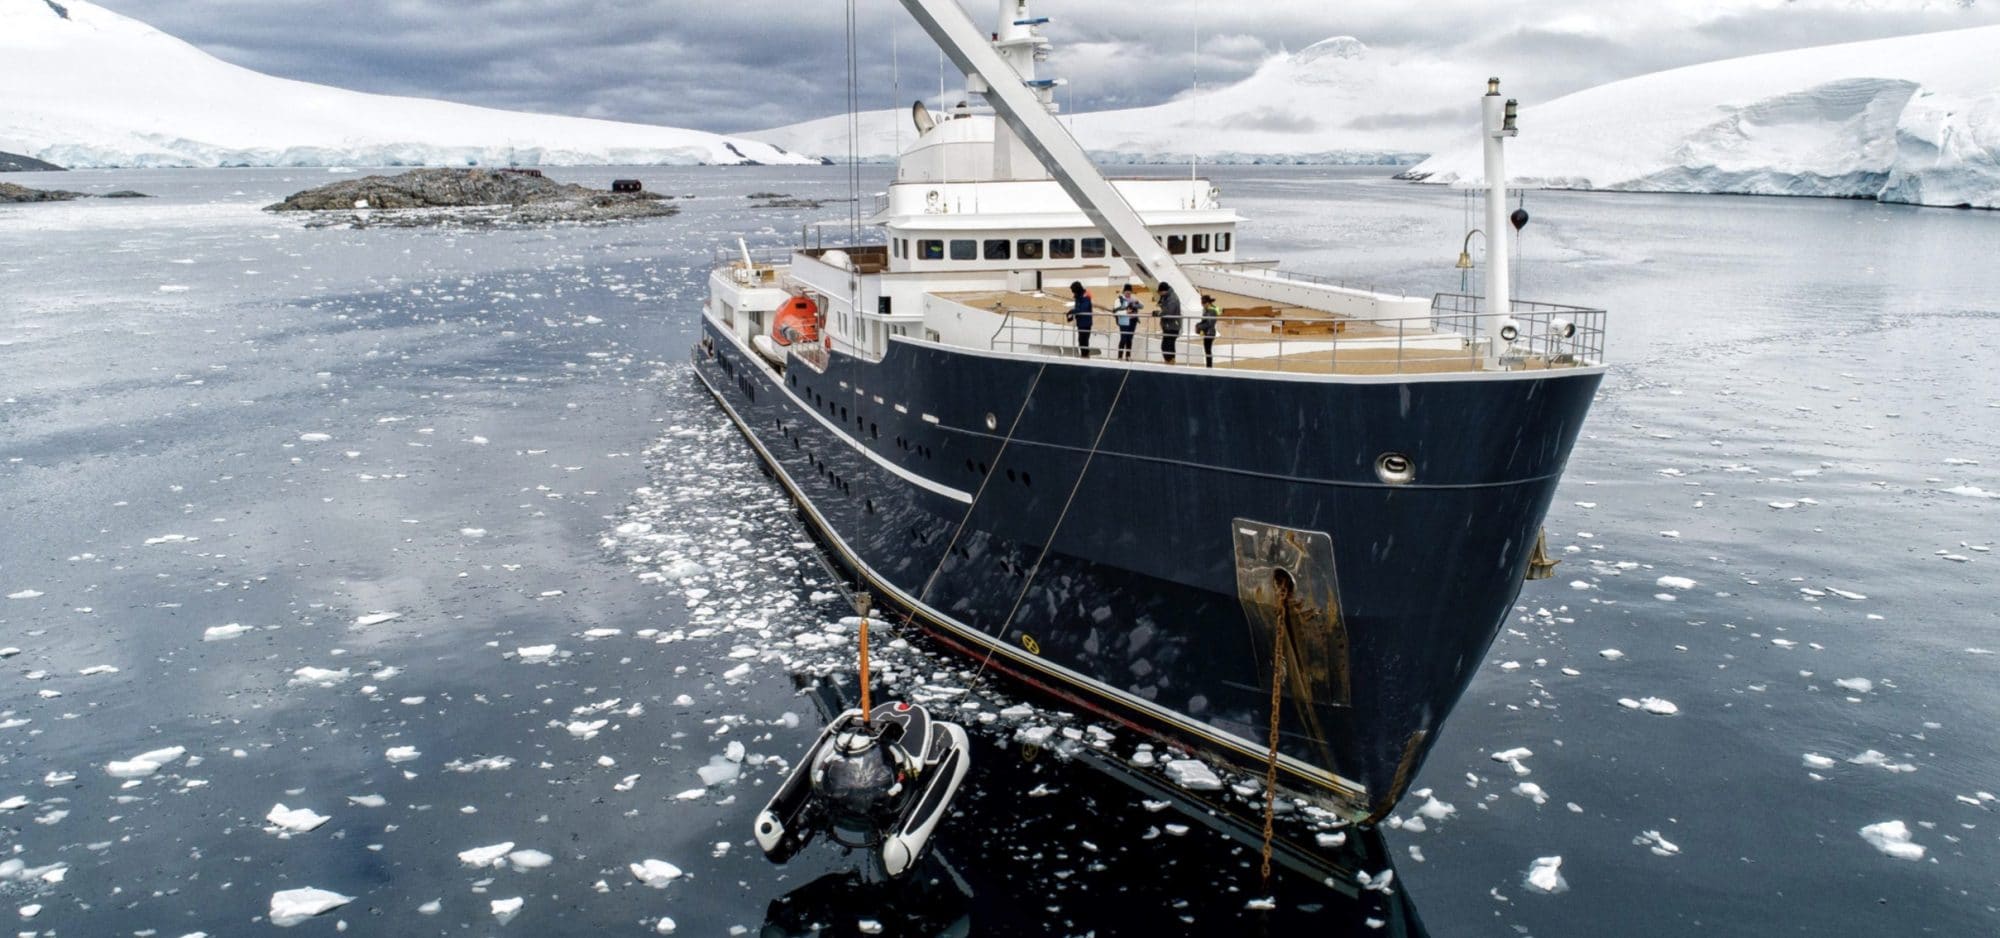 Lire la suite à propos de l’article Expédition exclusive en Antarctique à bord du M/Y LEGEND